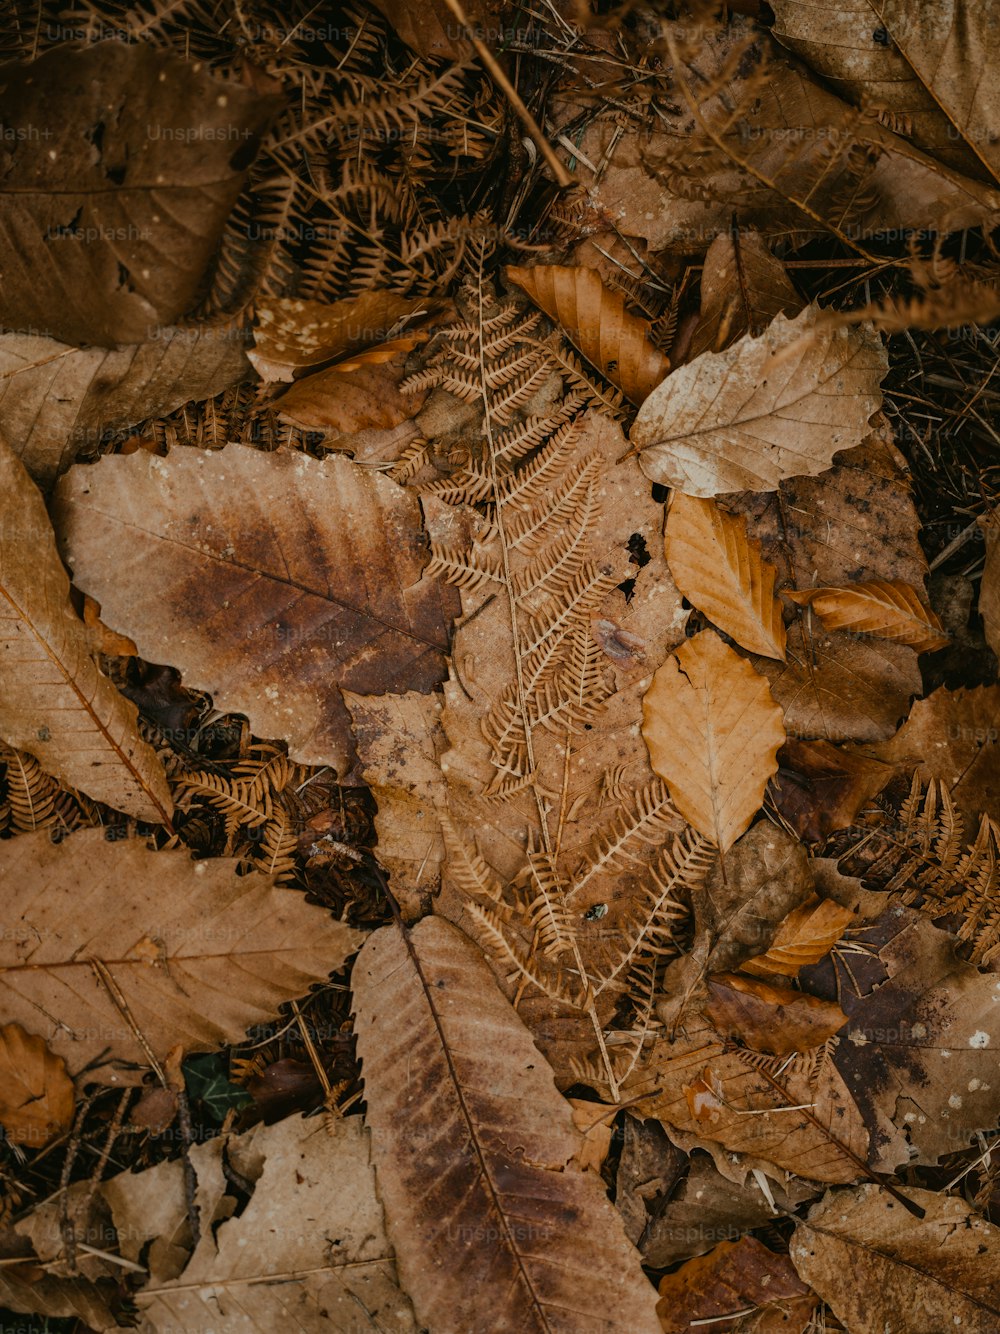 30k+ Dry Leaf Pictures  Download Free Images on Unsplash